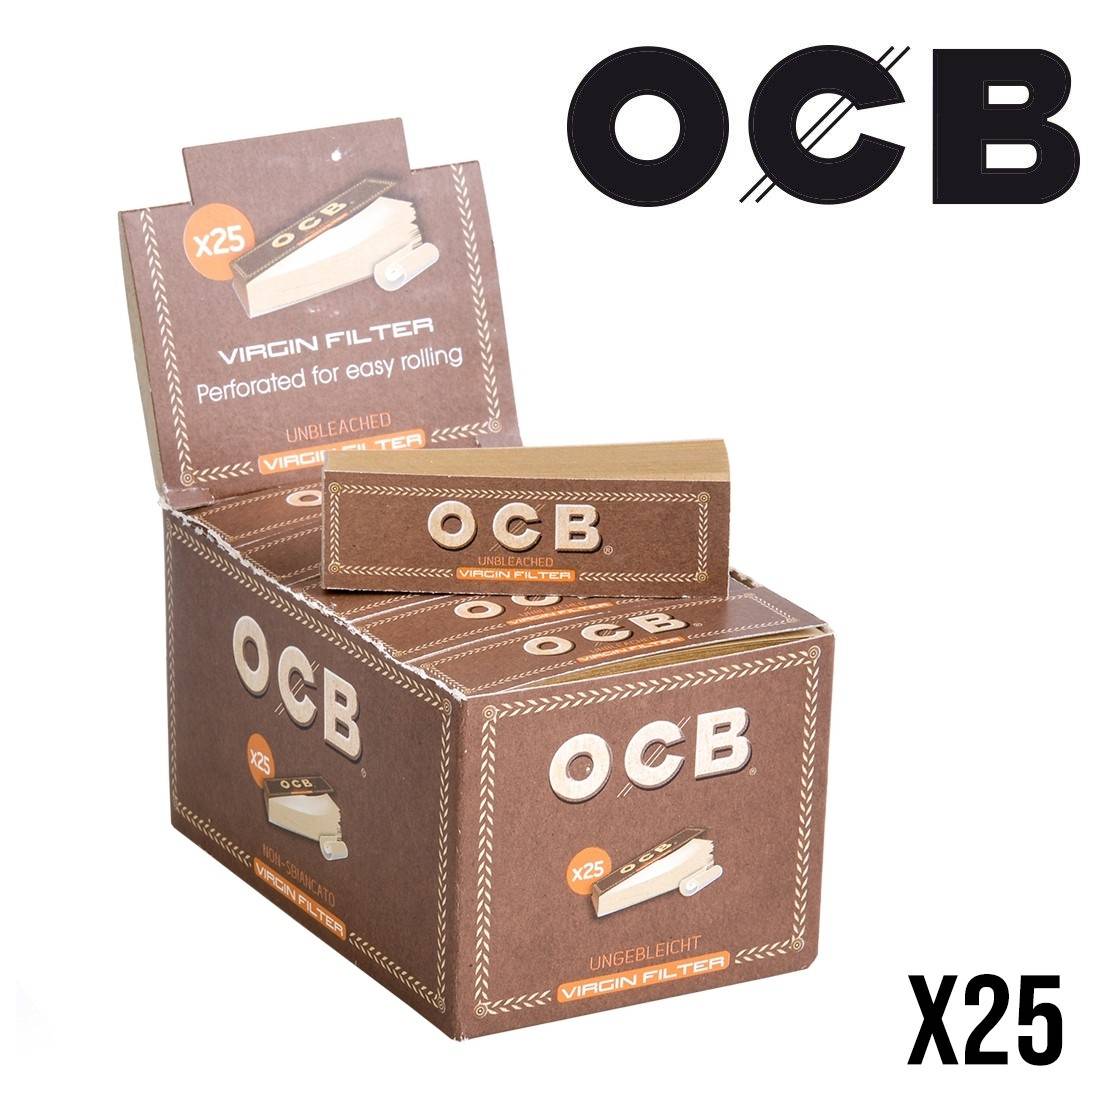 Filtres en carton OCB perforés x 5 - 2,75€